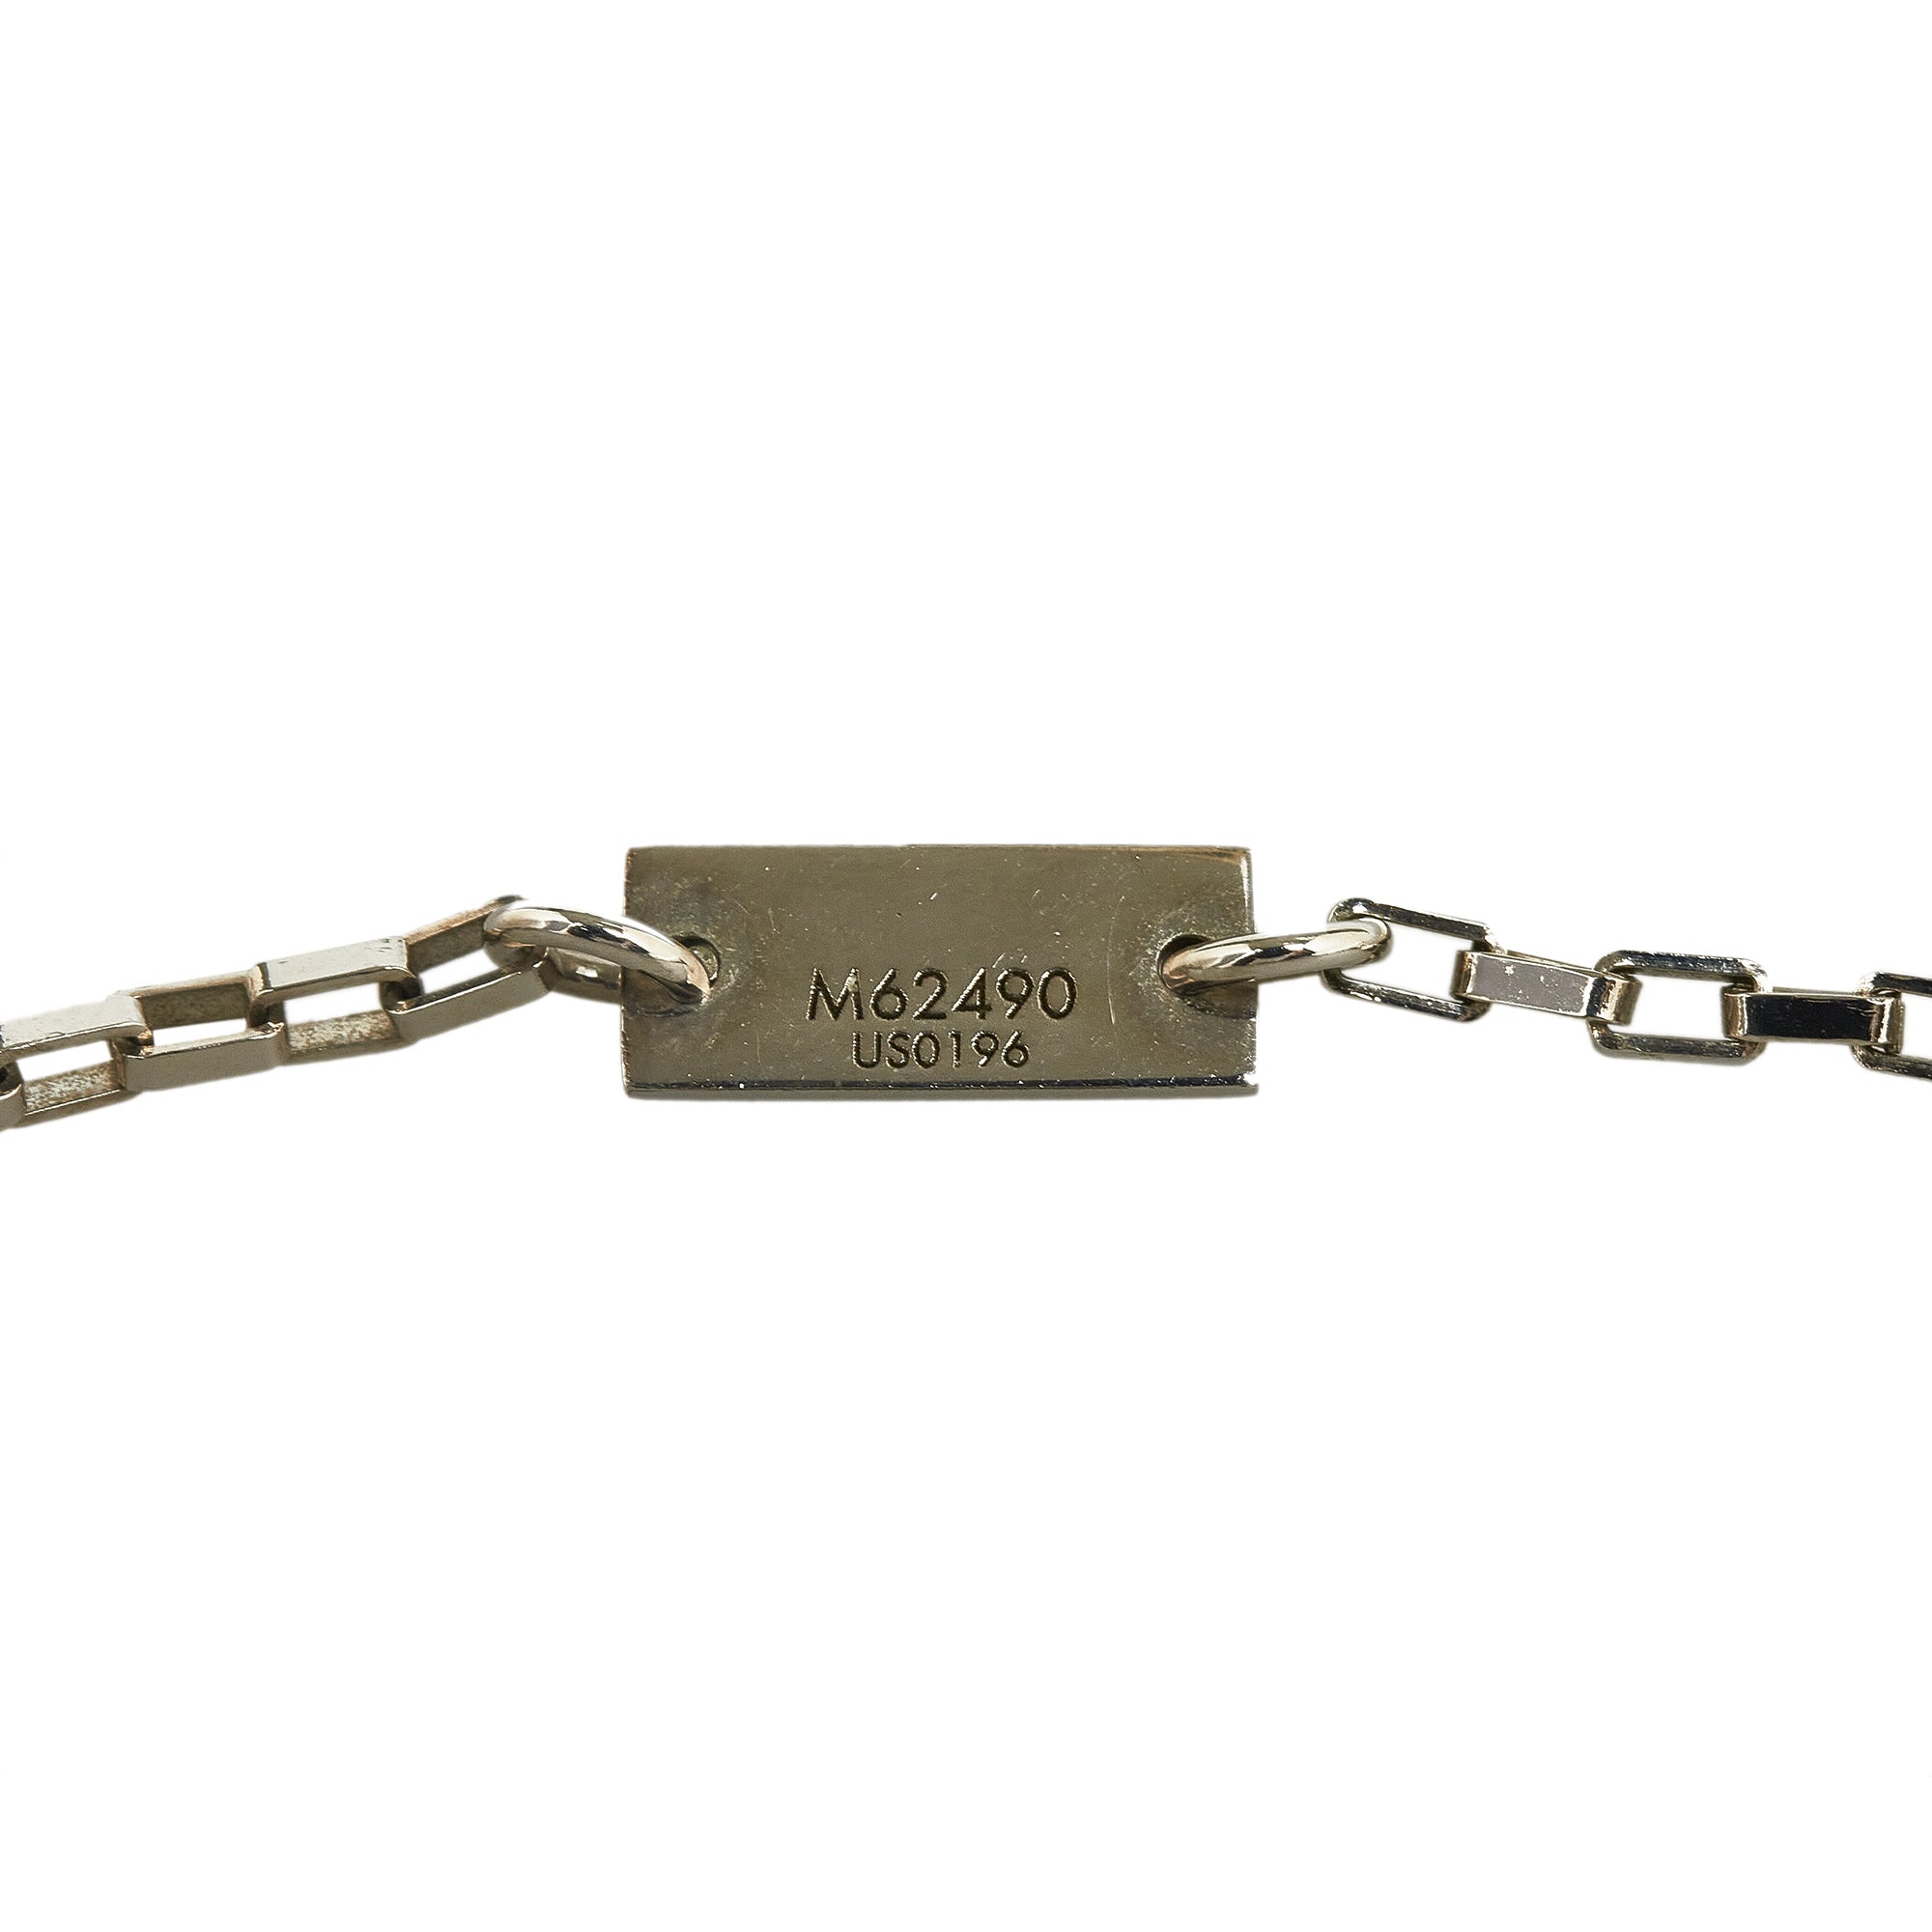 Silver Louis Vuitton Damier Black Necklace – Designer Revival